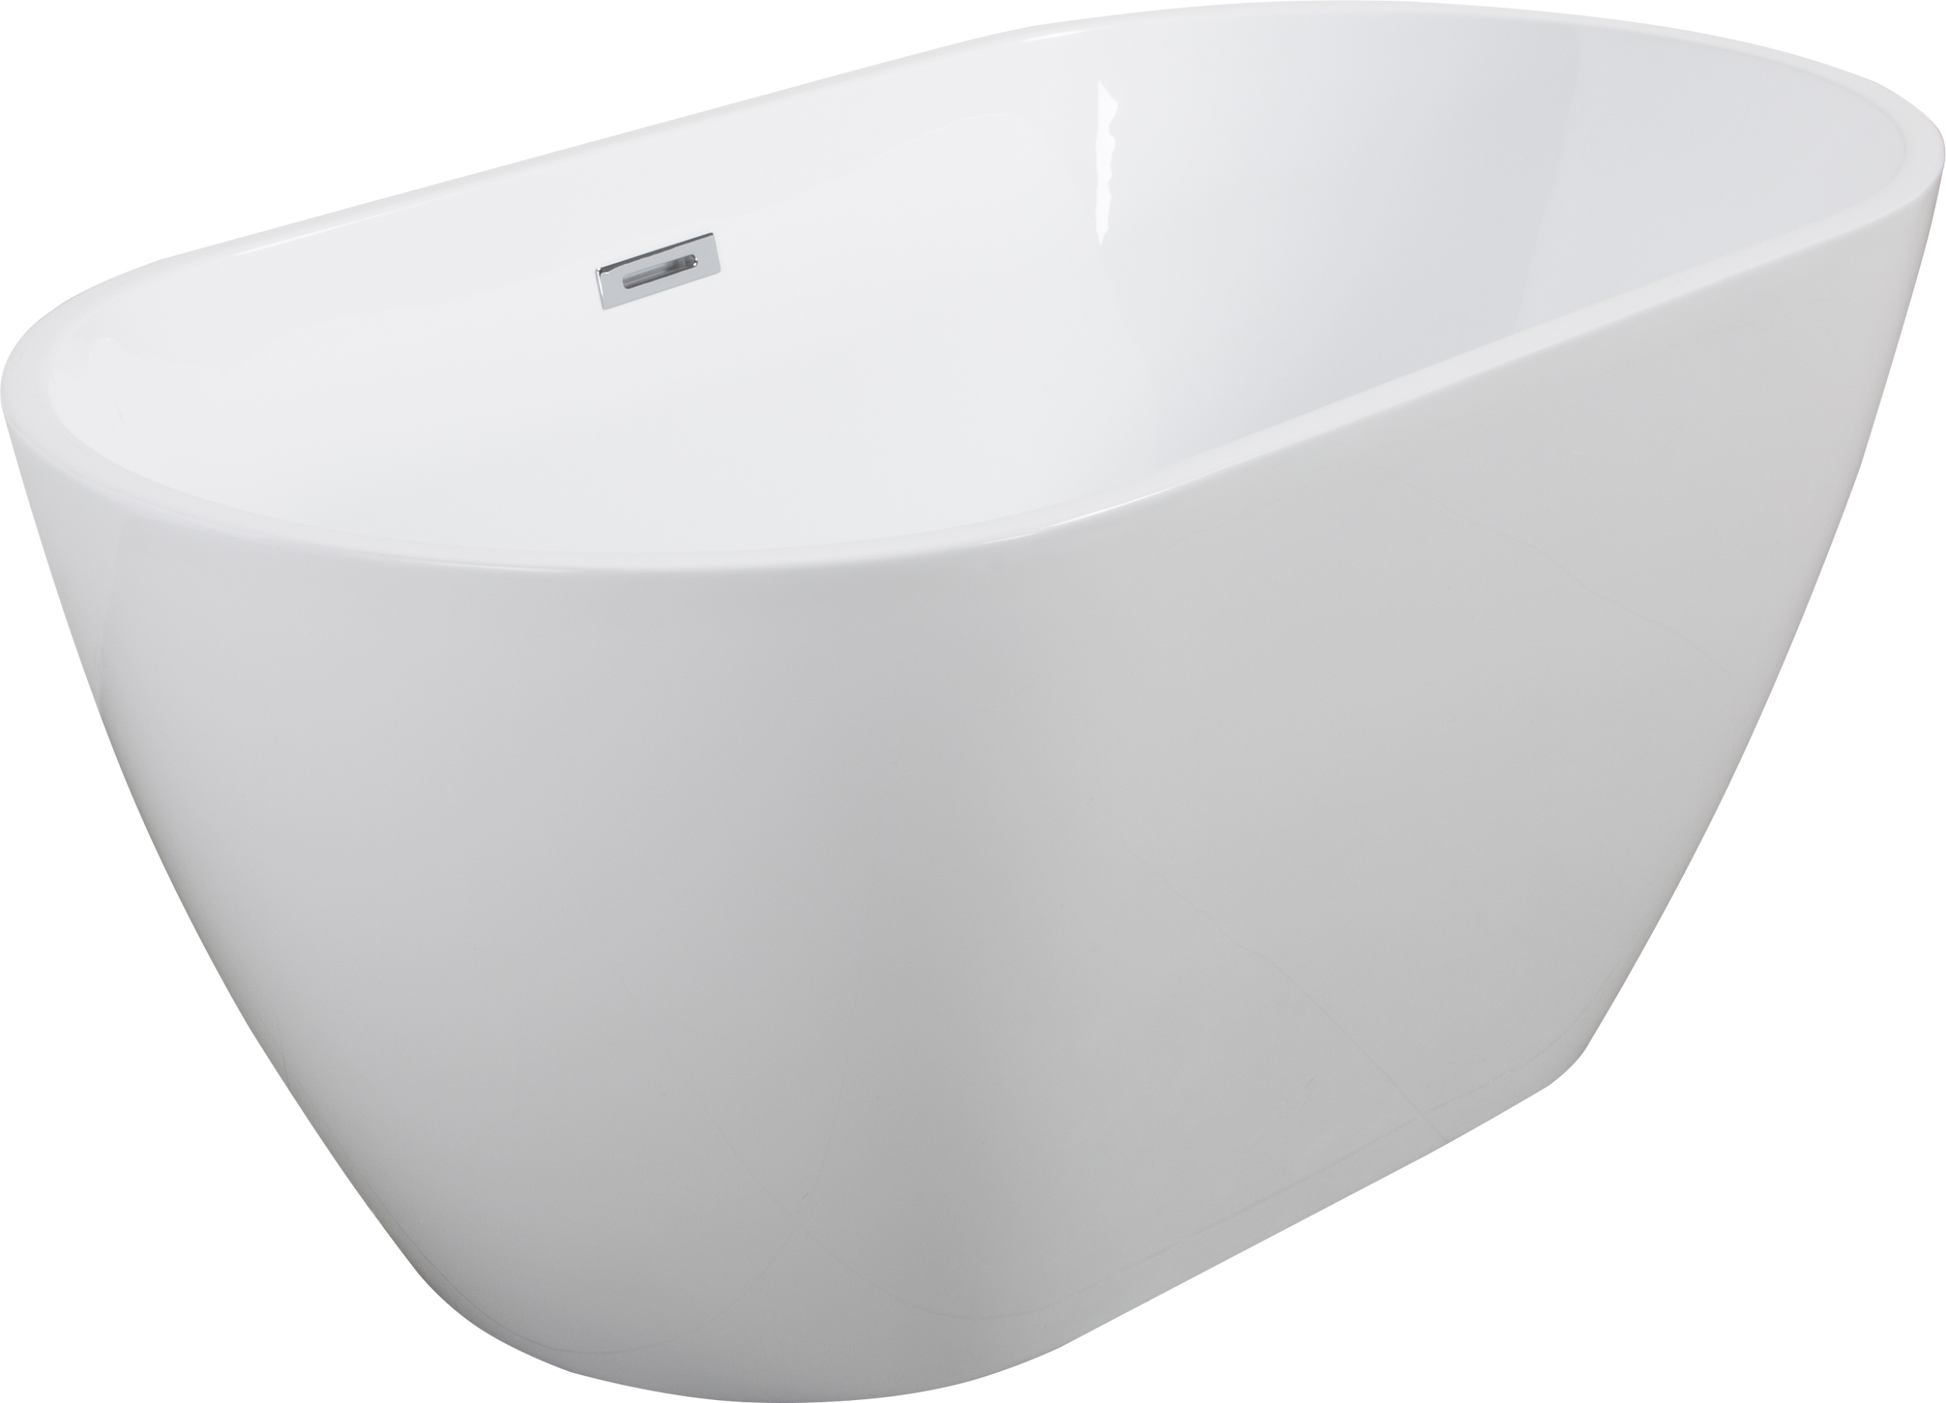 Shiny White Acrylic Freestanding Soaking Bathtub